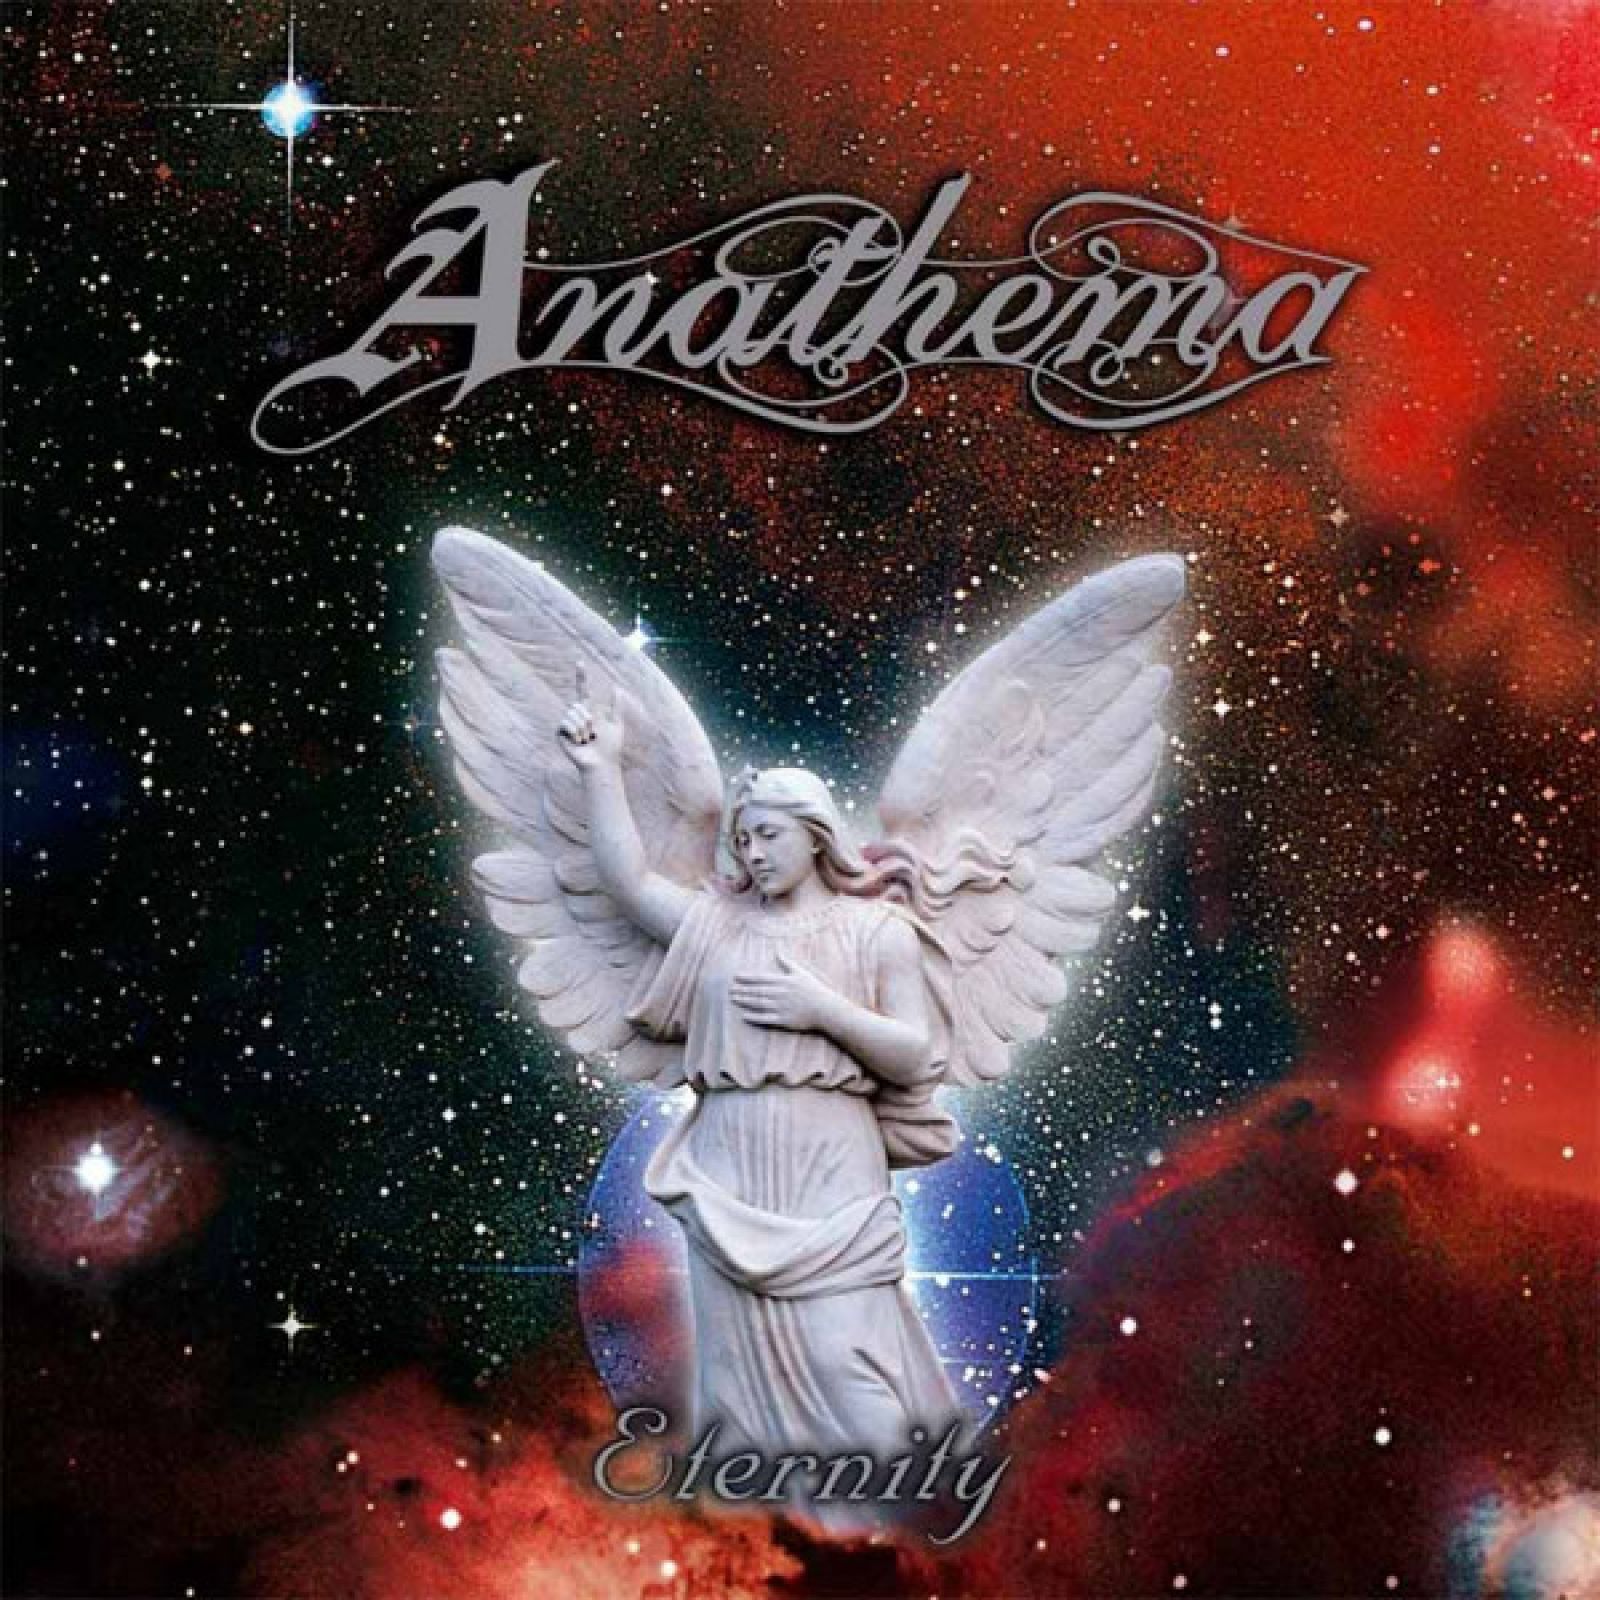 Виниловая пластинка Anathema, Eternity (0801056801517) anathema resonance 1